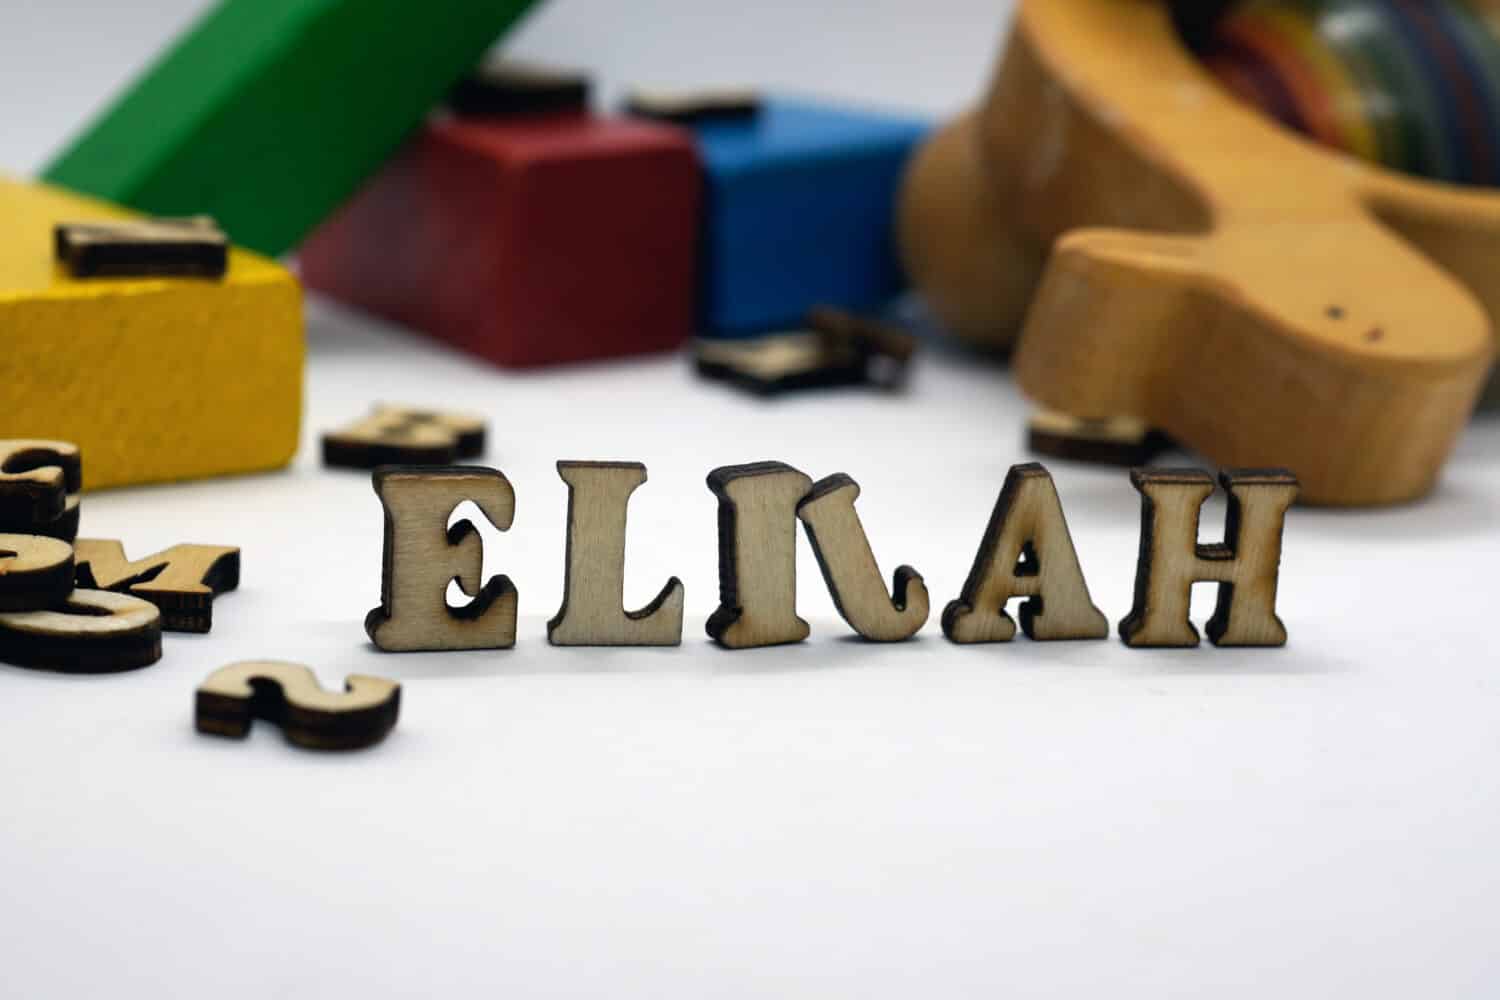 popular american male first name elijah